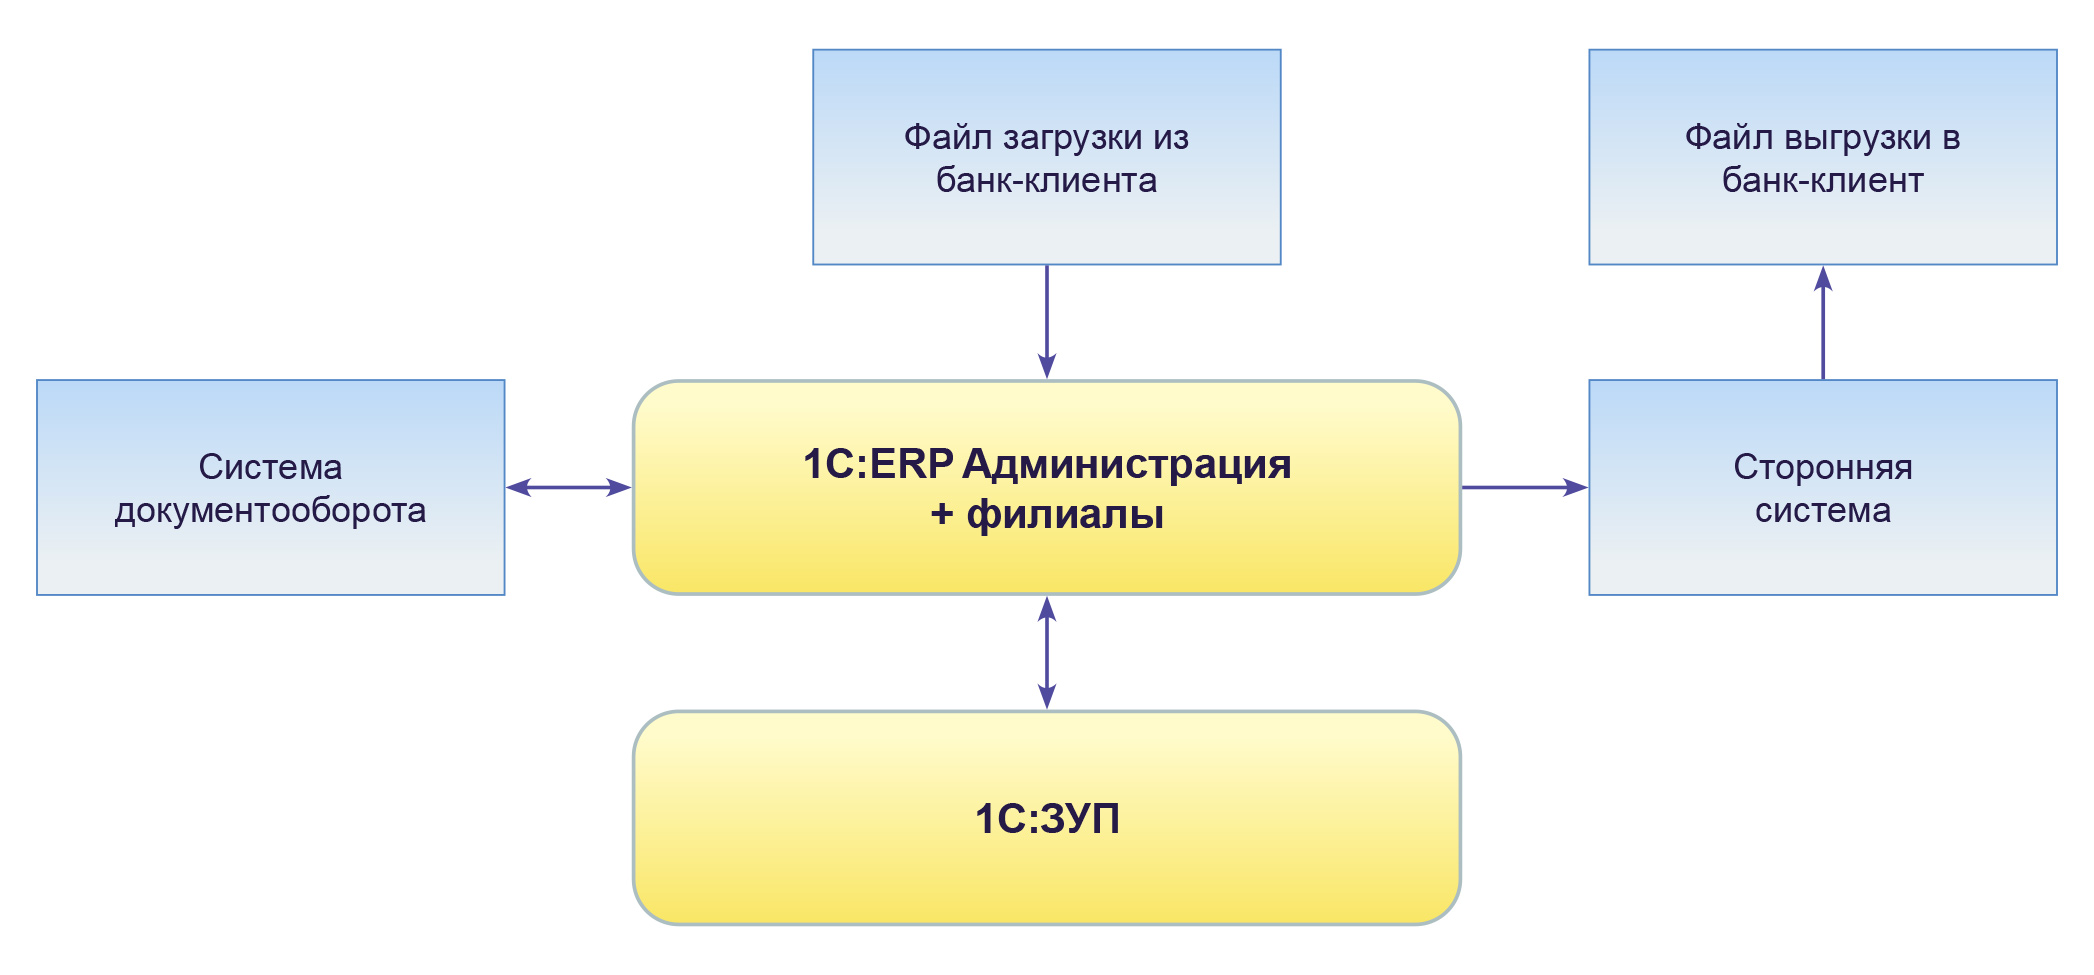 1C_Shema_GazpromPRU_2.jpg